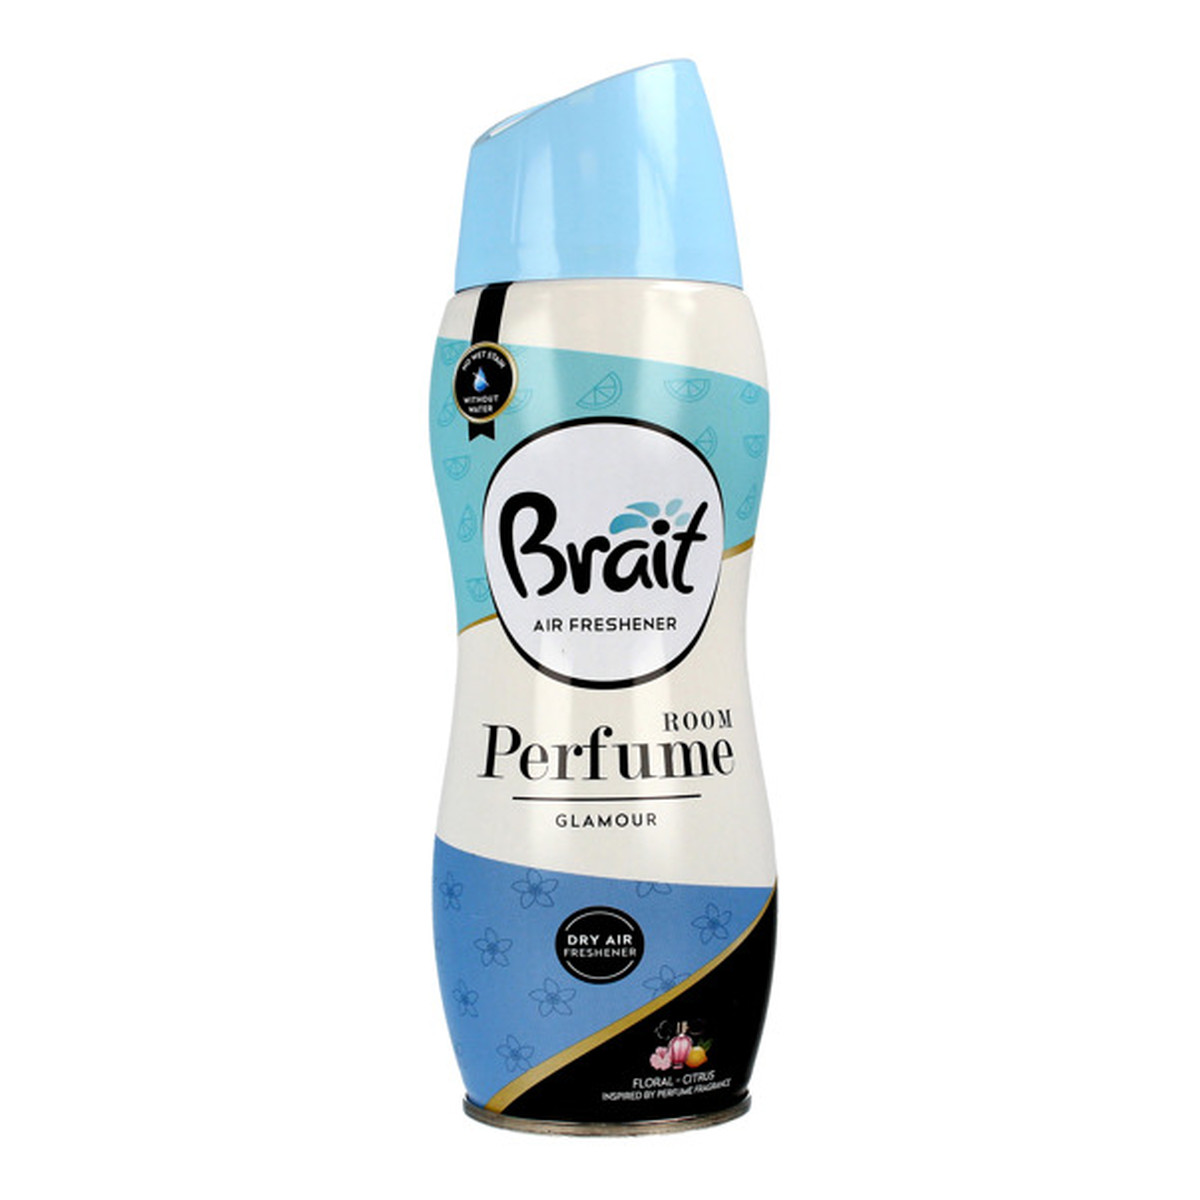 Brait Dry Air Freshener Suchy odświeżacz powietrza Room Perfume - Glamour 300ml